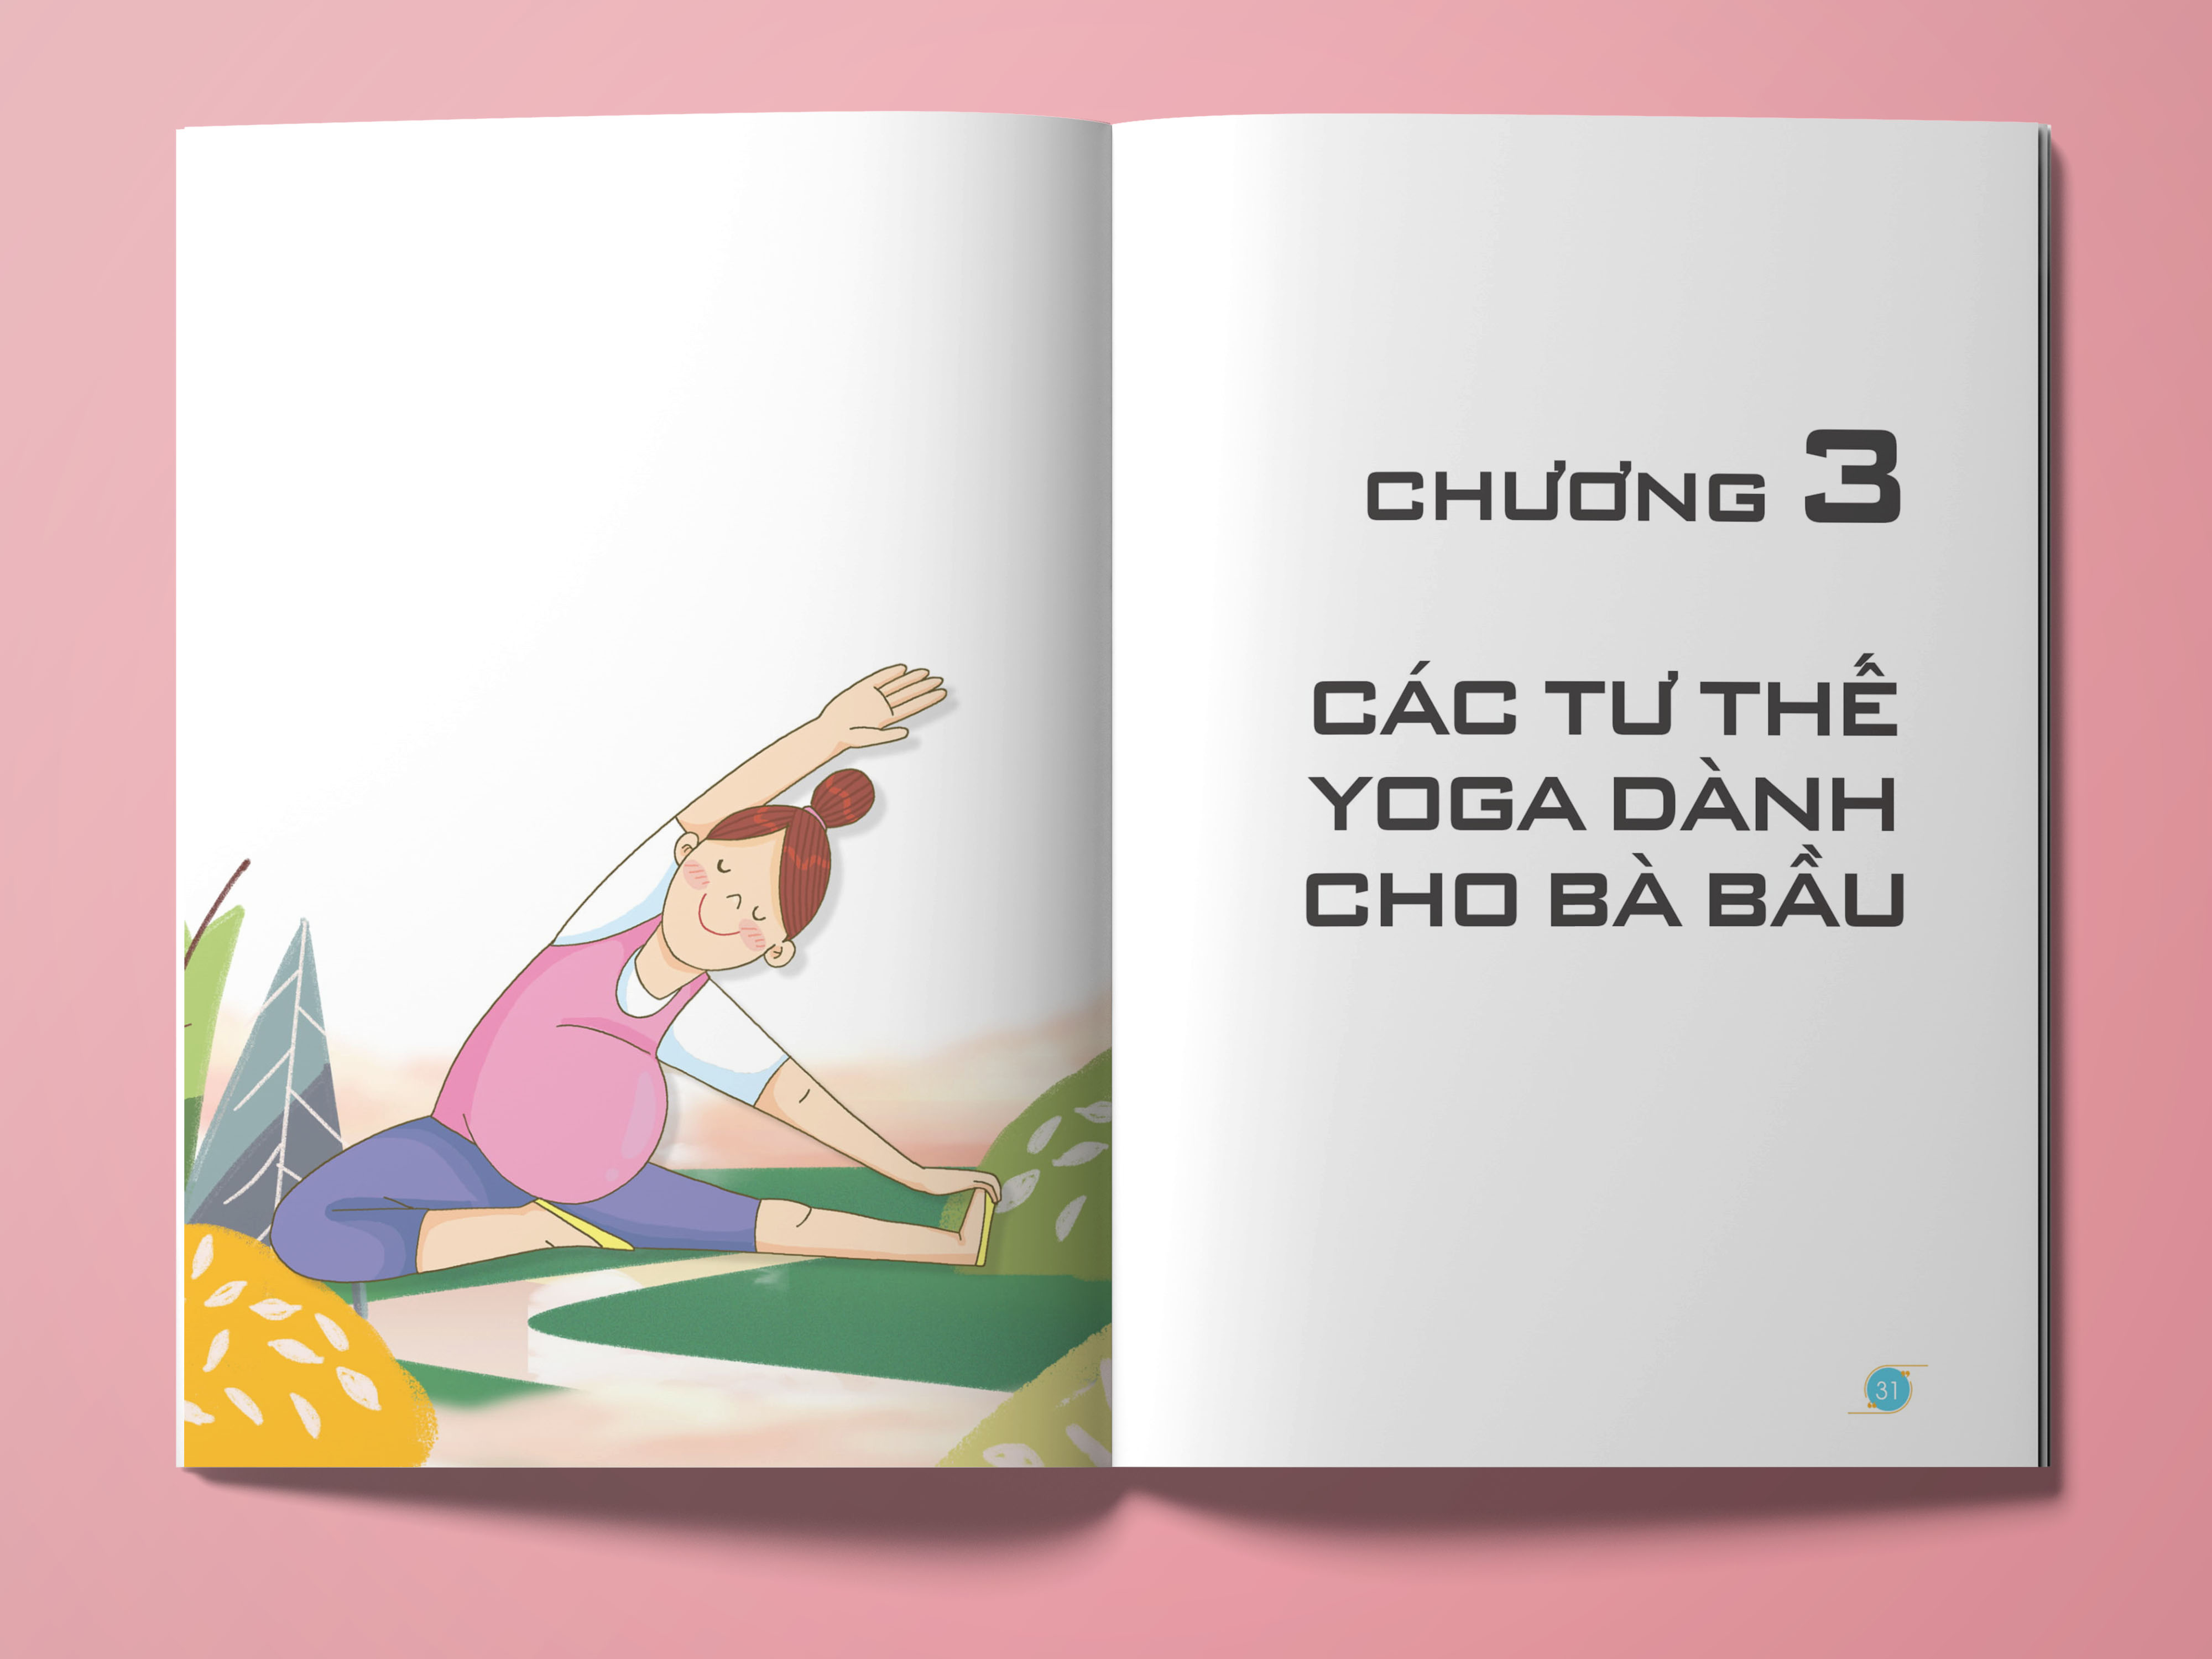 Yoga bà bầu